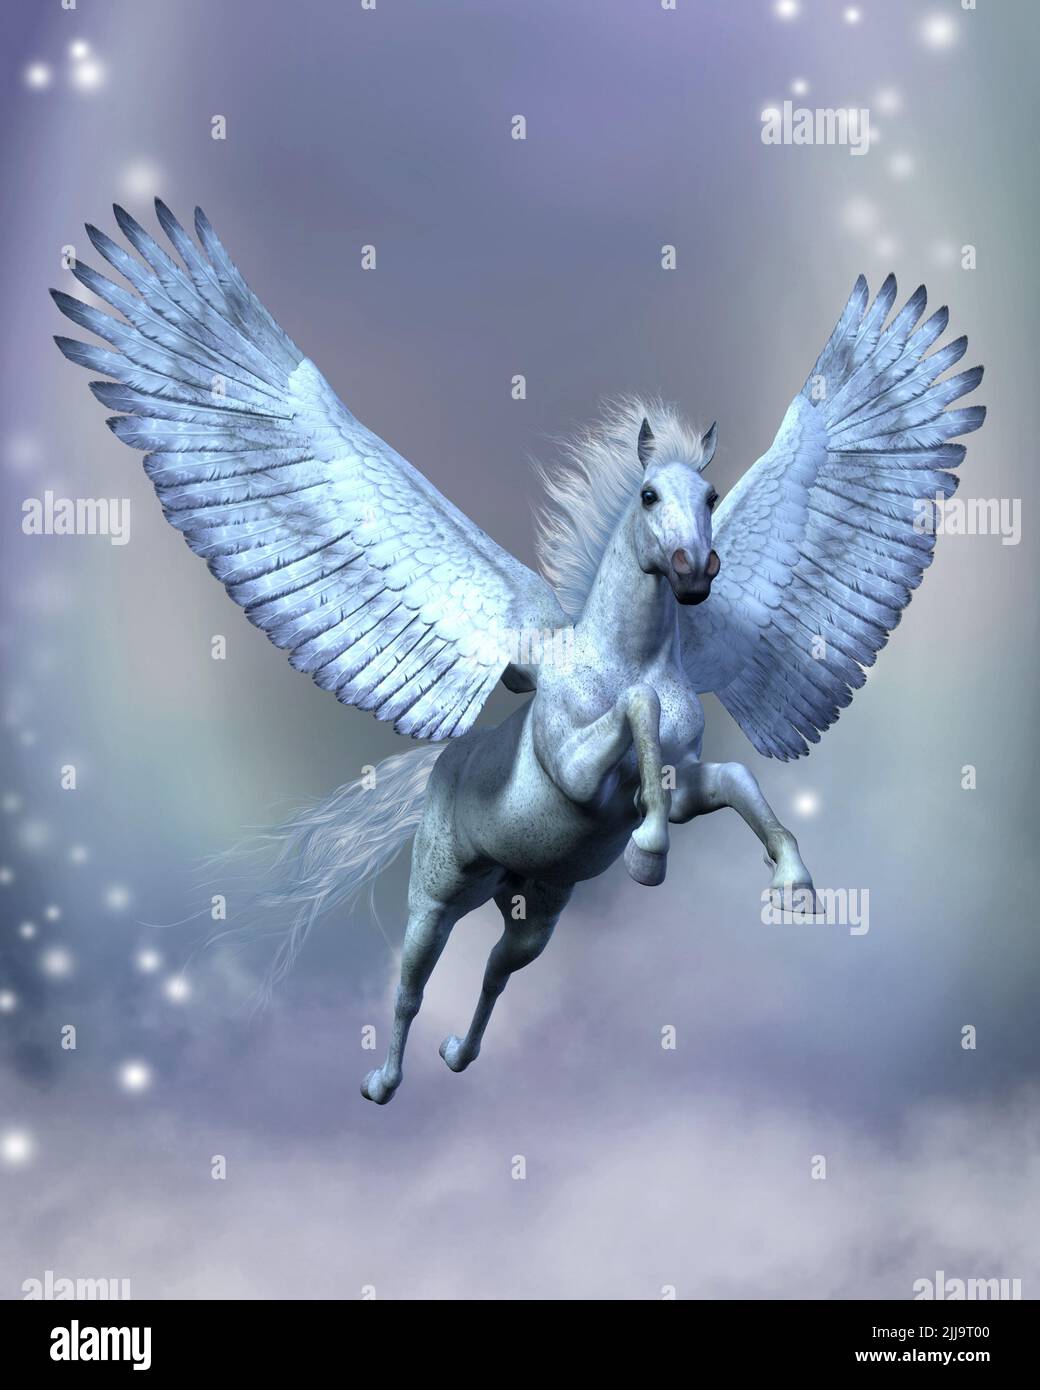 White Pegasus Fantasy - der legendäre weiße Pegasus fliegt zwischen Sternen und flauschigen Wolken auf stabilen Flügeln. Stockfoto